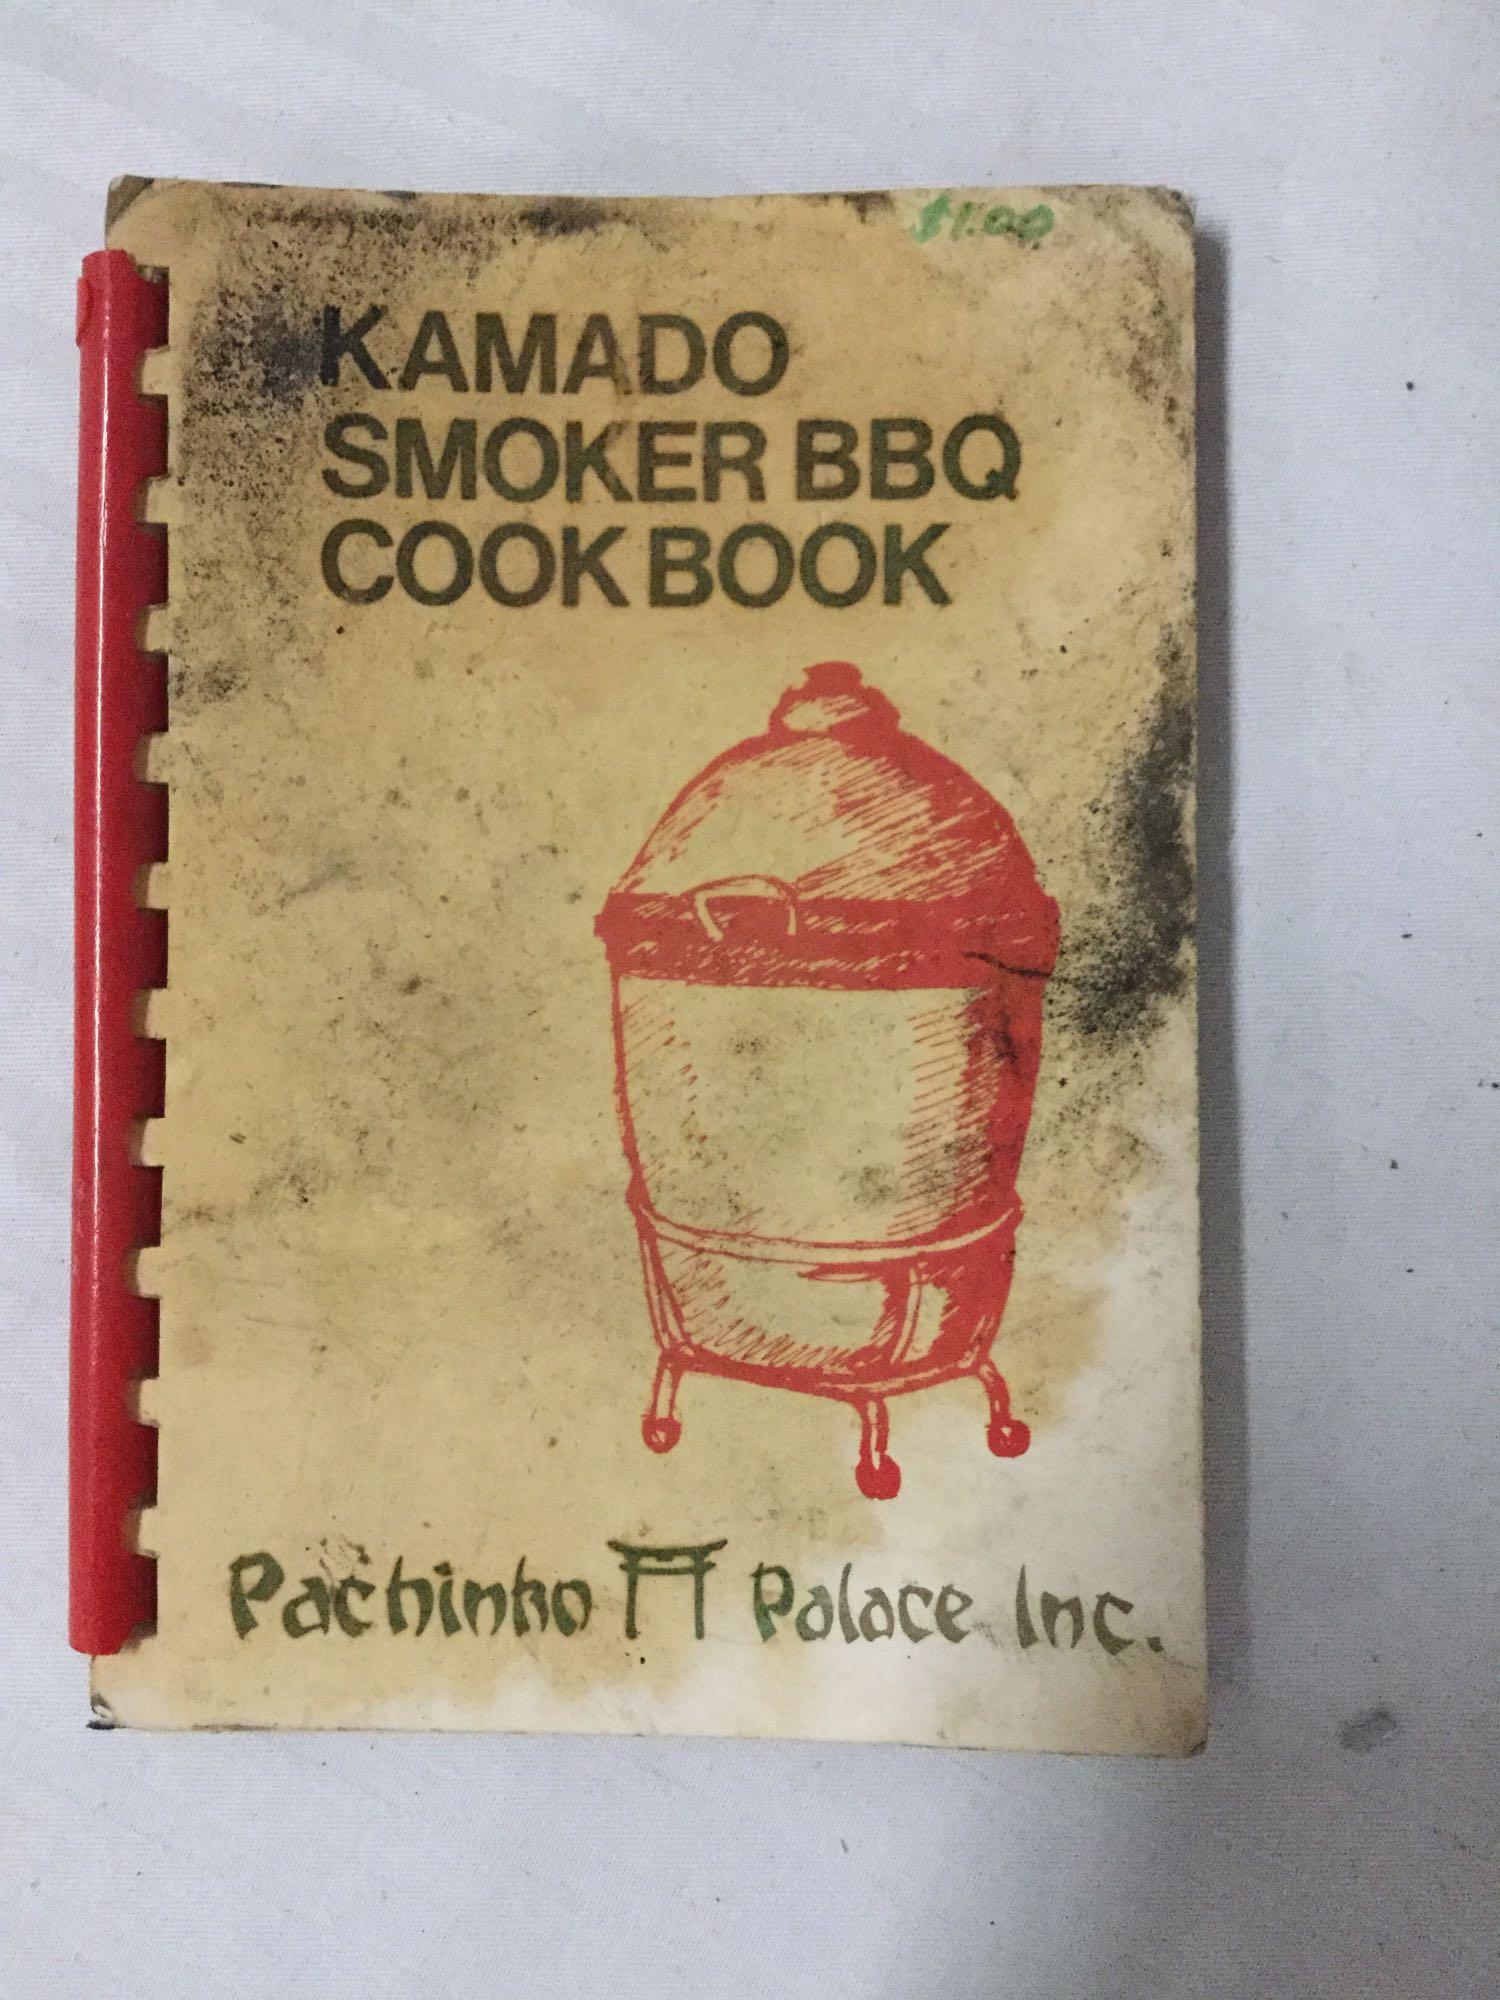 Used Kinuurayaki barbecue Kamado smoker pot.